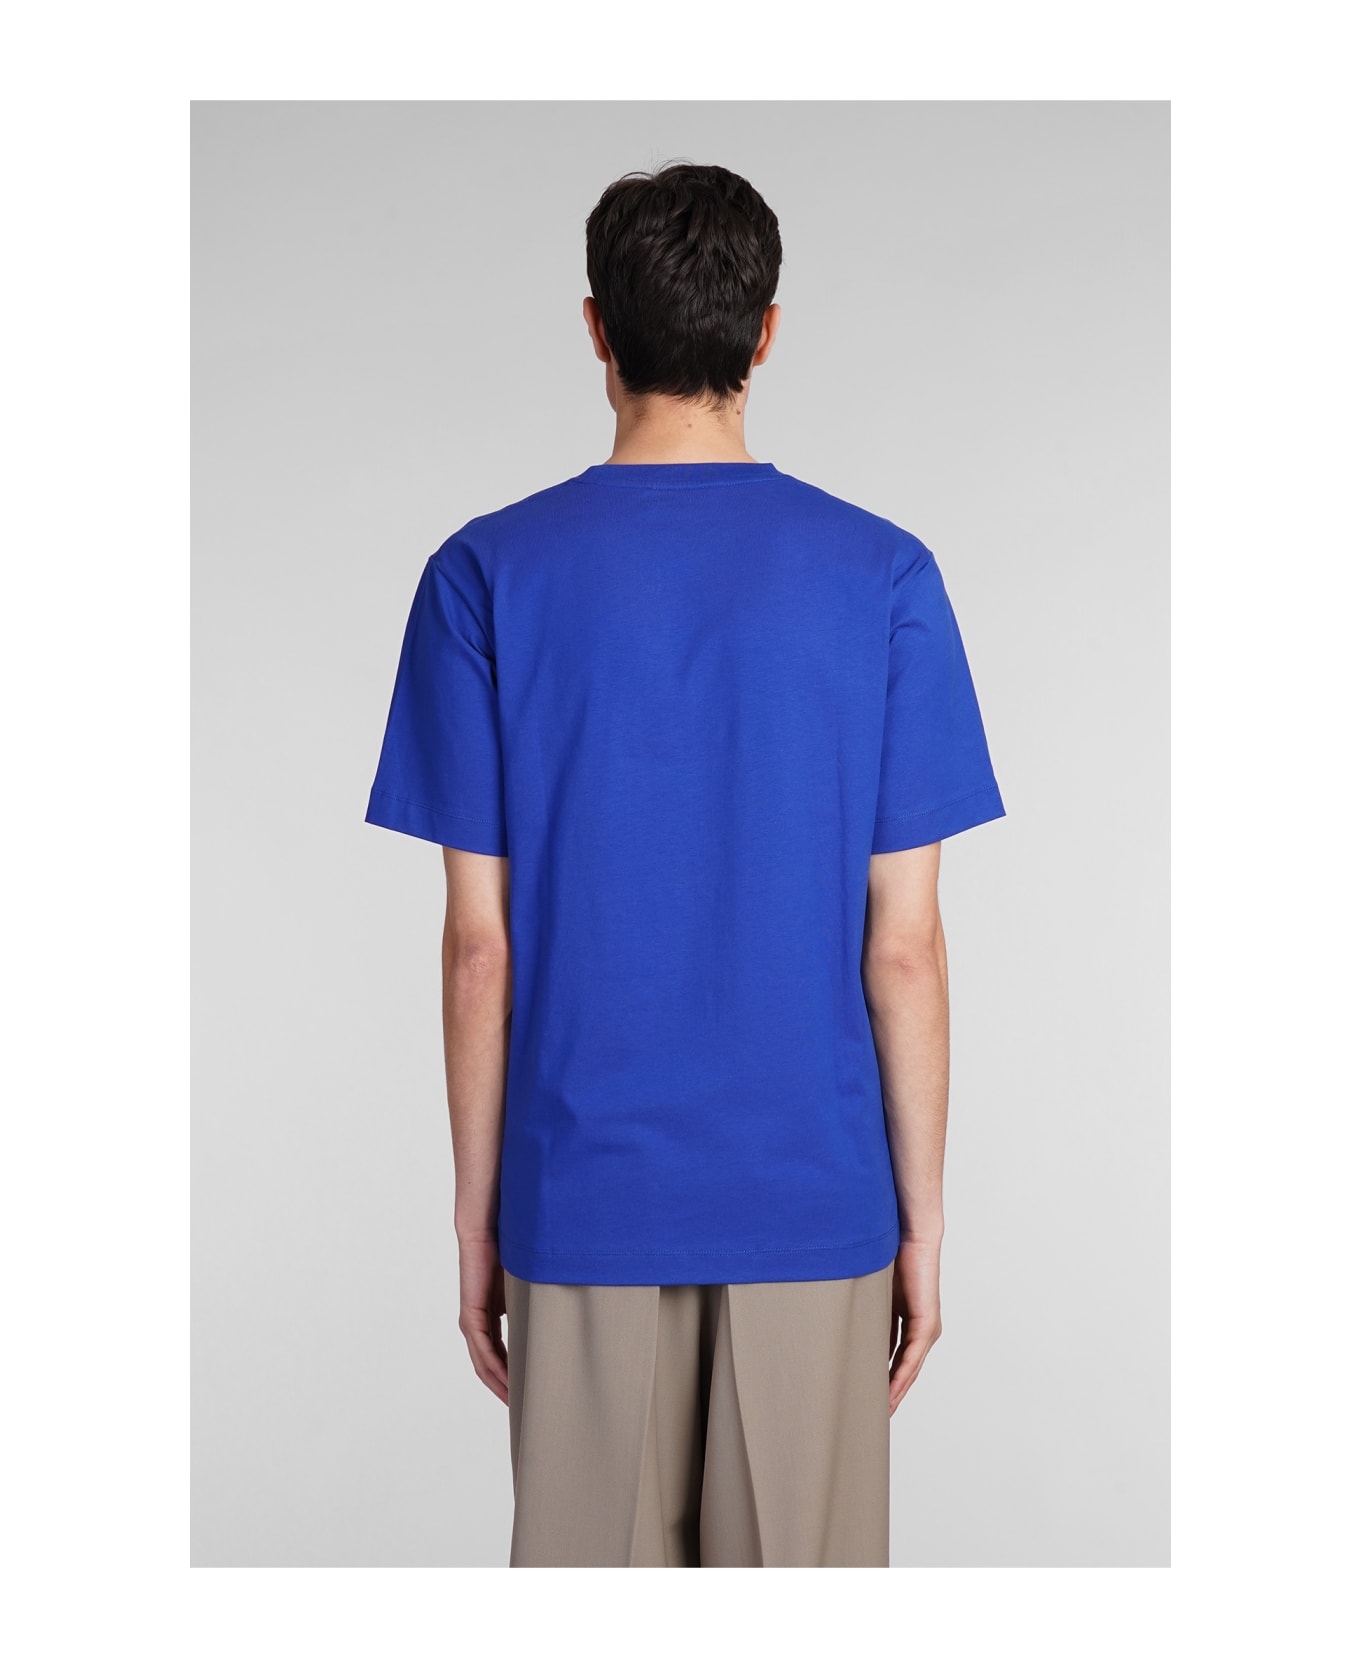 Études T-shirt In Blue Cotton - blue シャツ